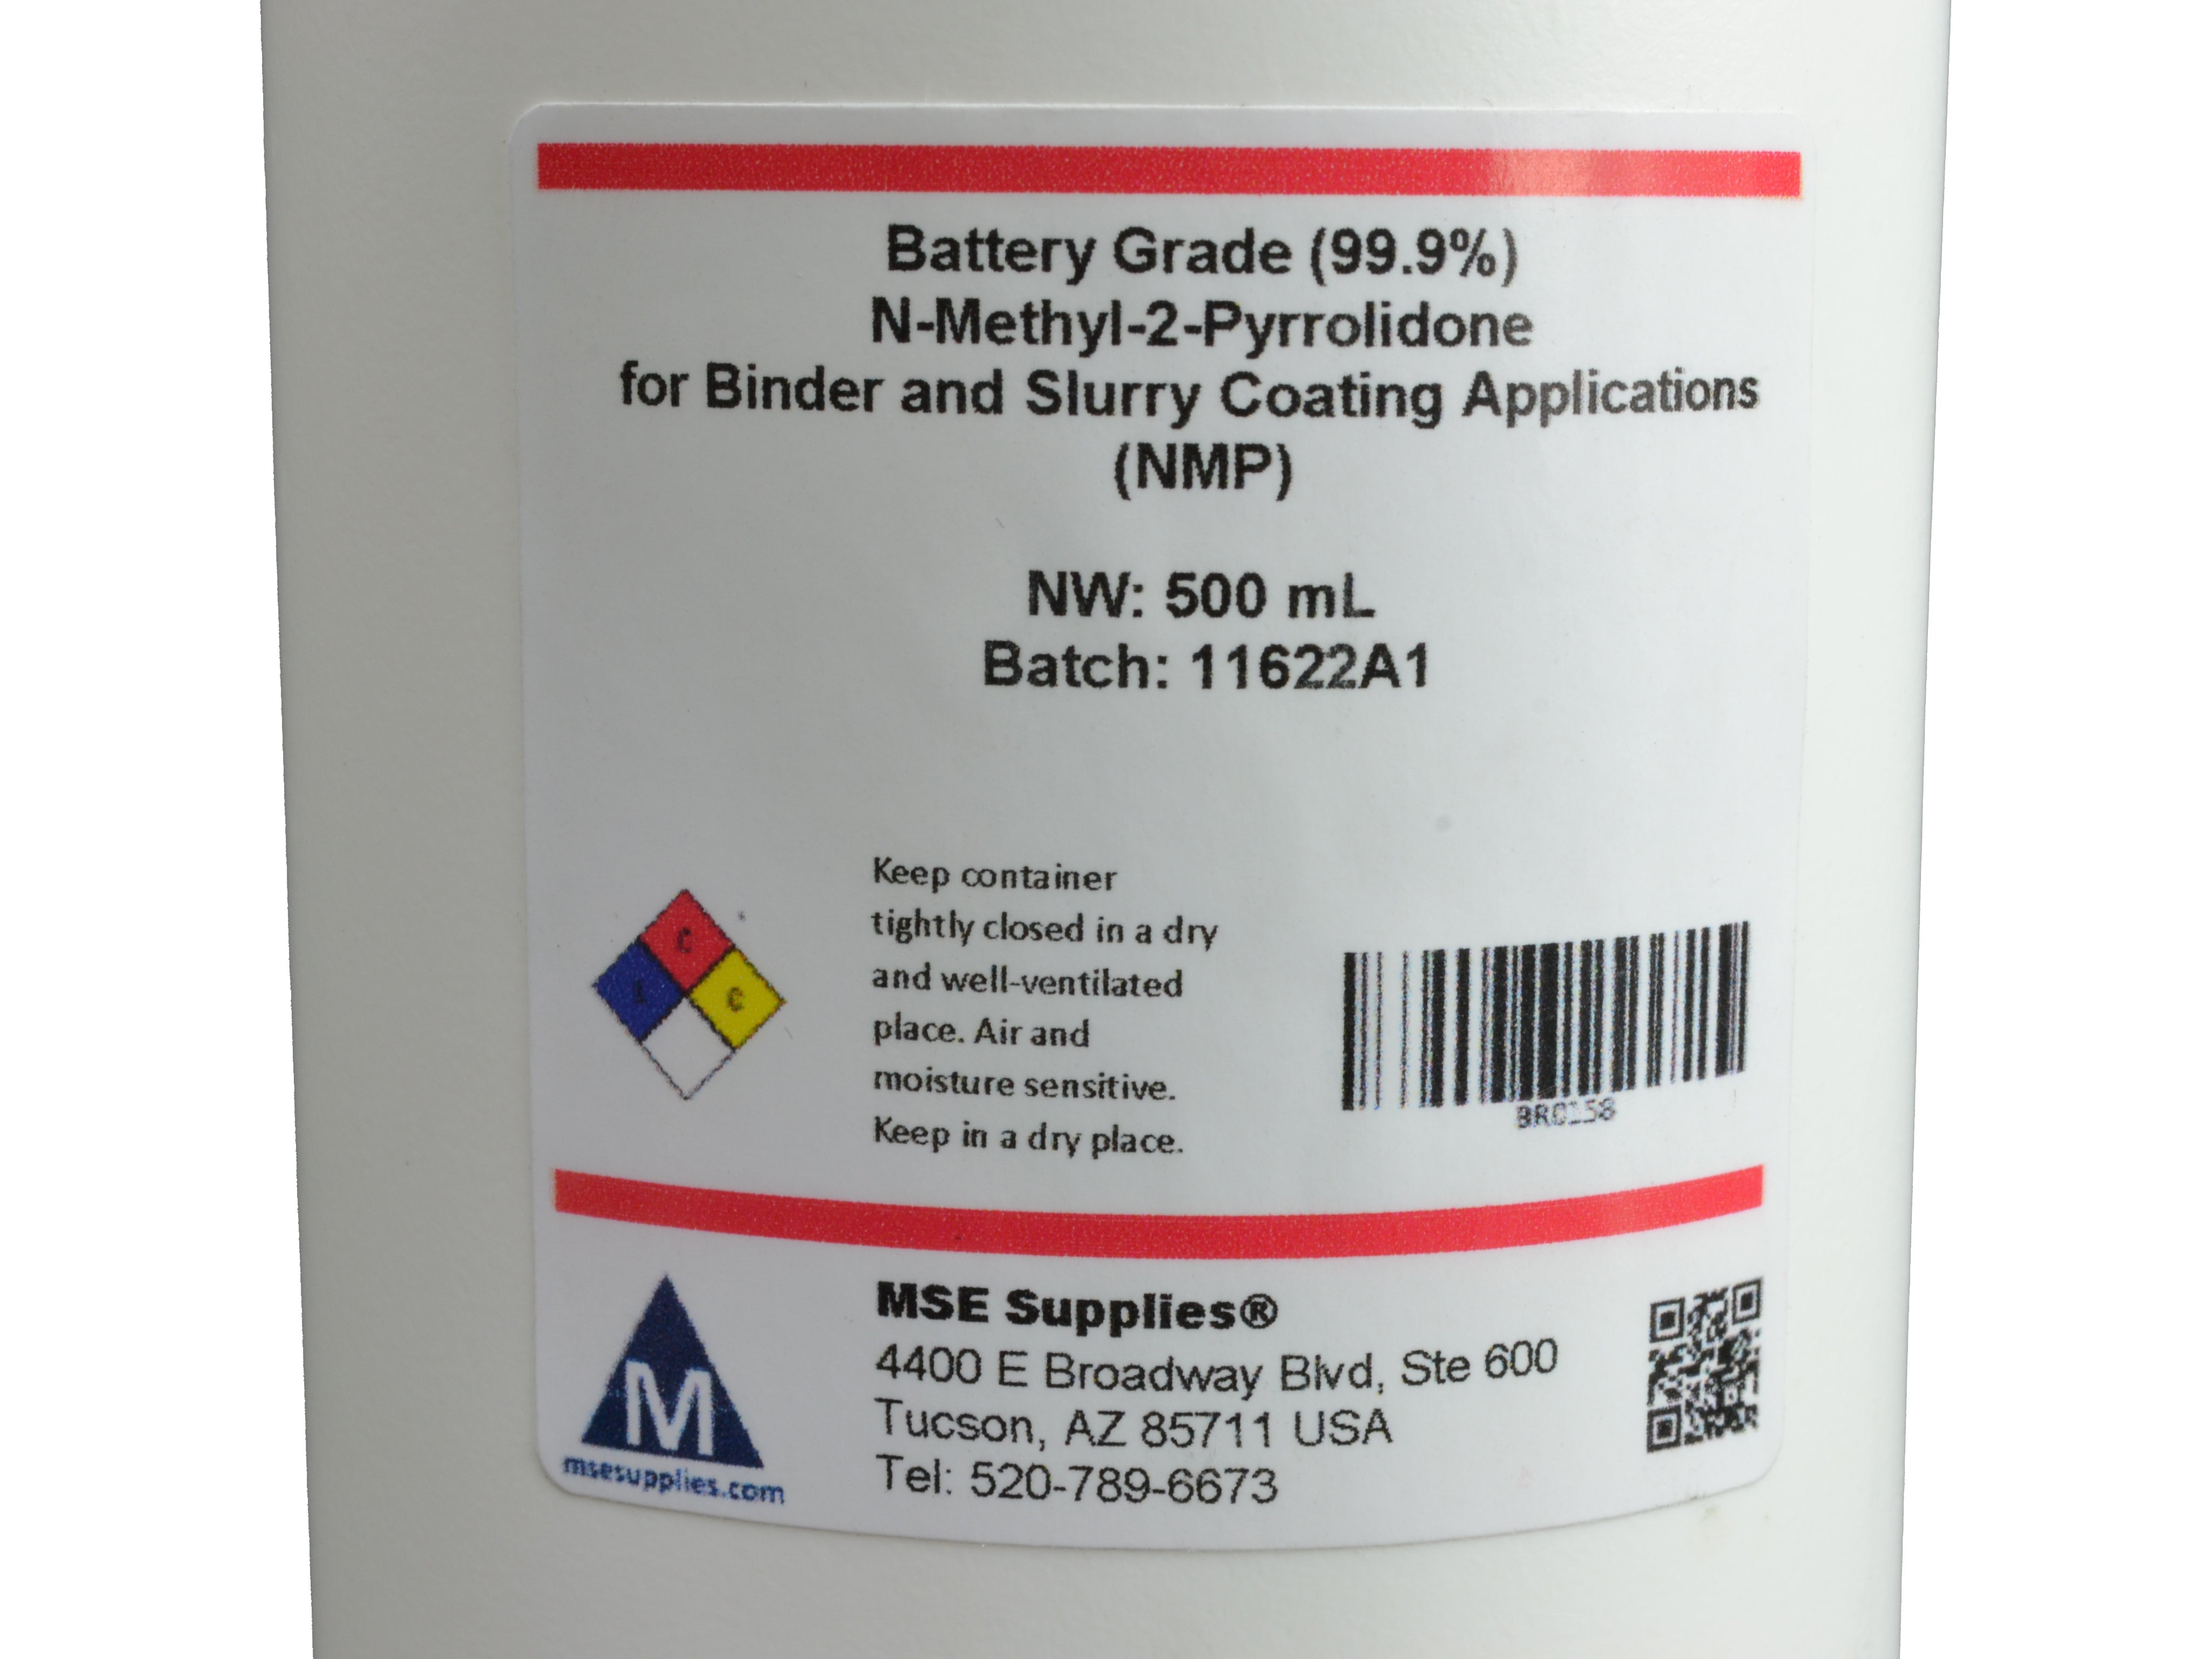 MSE PRO 500 mL/bottle, Battery Grade (99.9%) N-Methyl-2